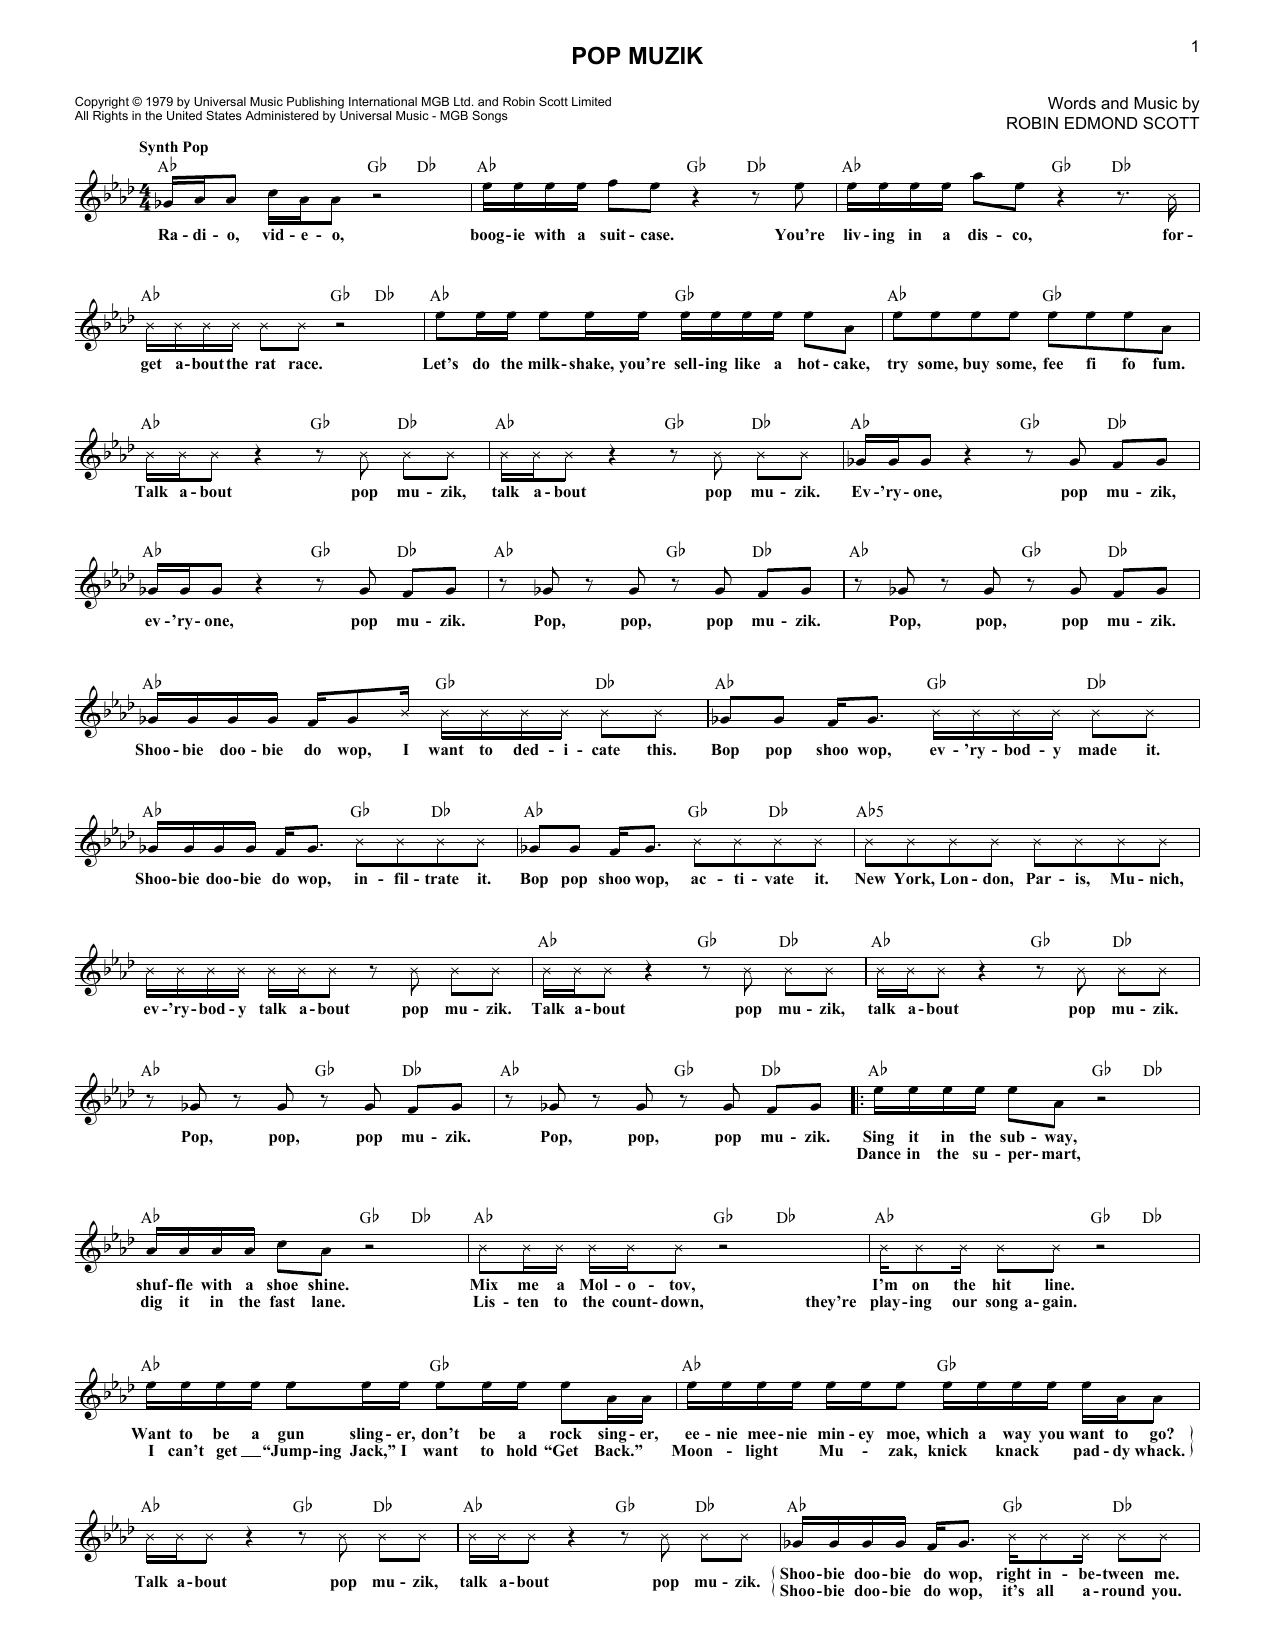 Robin Edmond Scott Pop Muzik sheet music notes and chords arranged for Lead Sheet / Fake Book